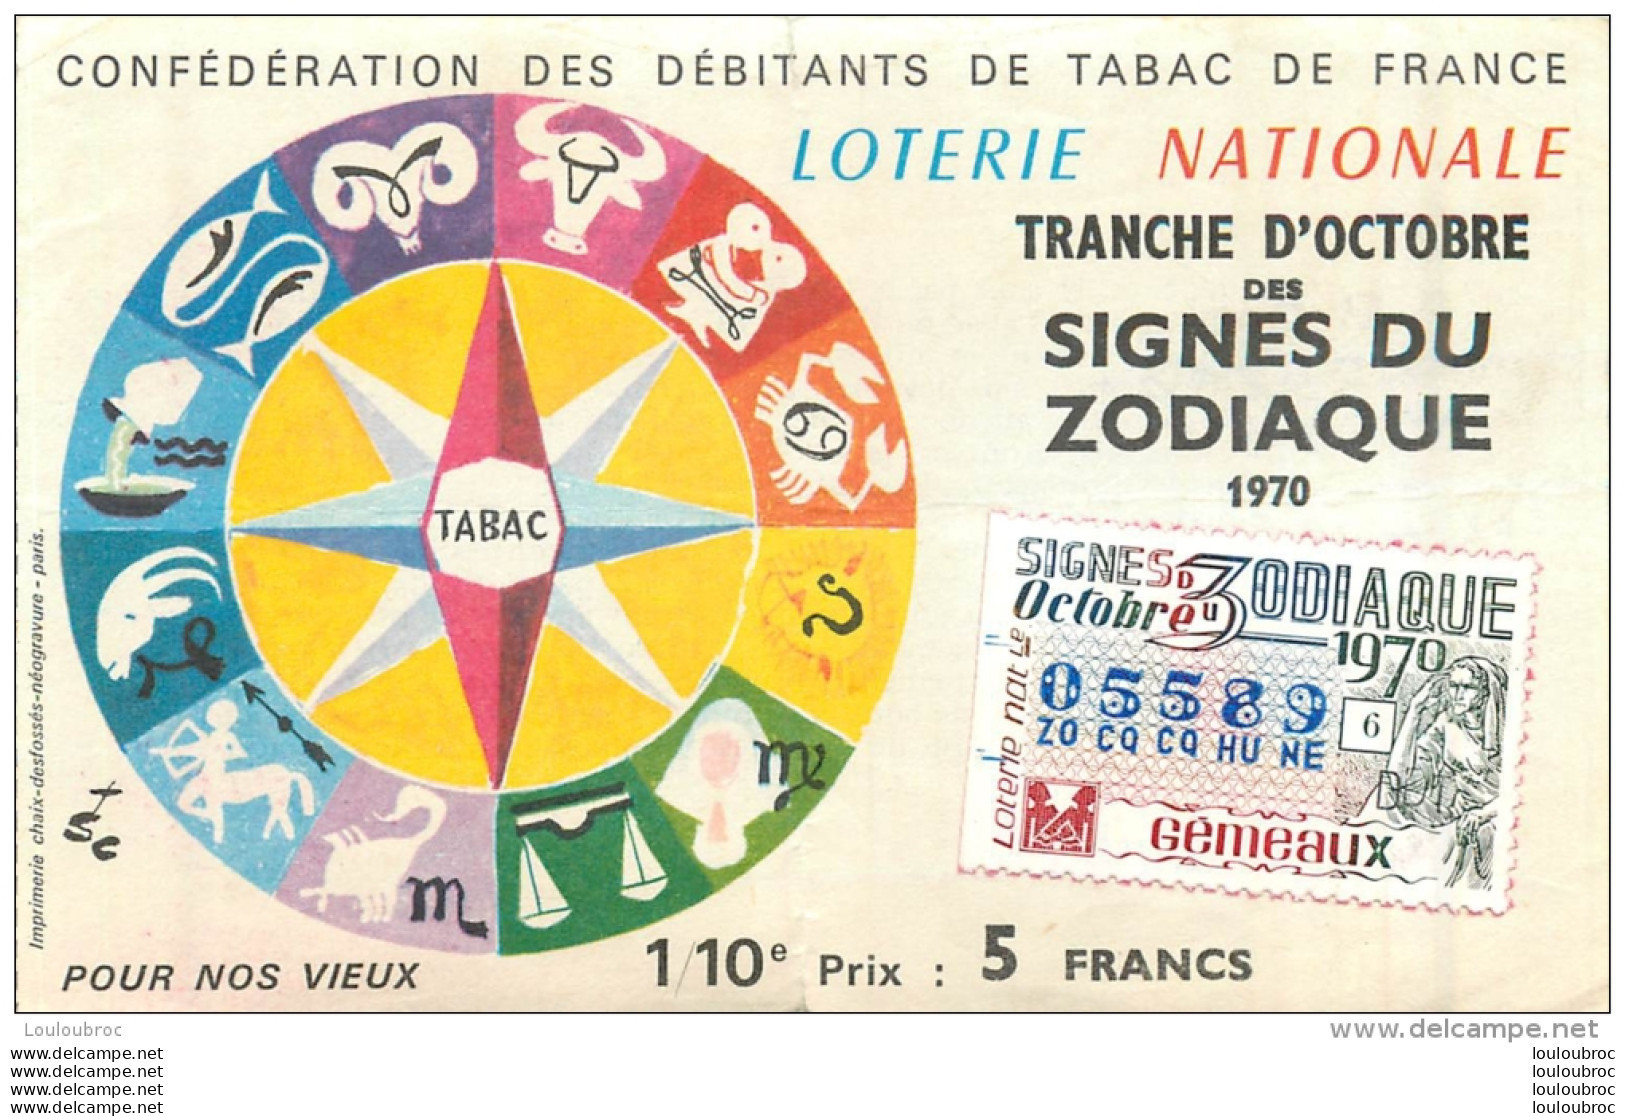 BILLET DE LOTERIE NATIONALE 1979 CONFEDERATION DES DEBITANTS DE TABAC SIGNES DU ZODIAQUE GEMEAUX - Loterijbiljetten